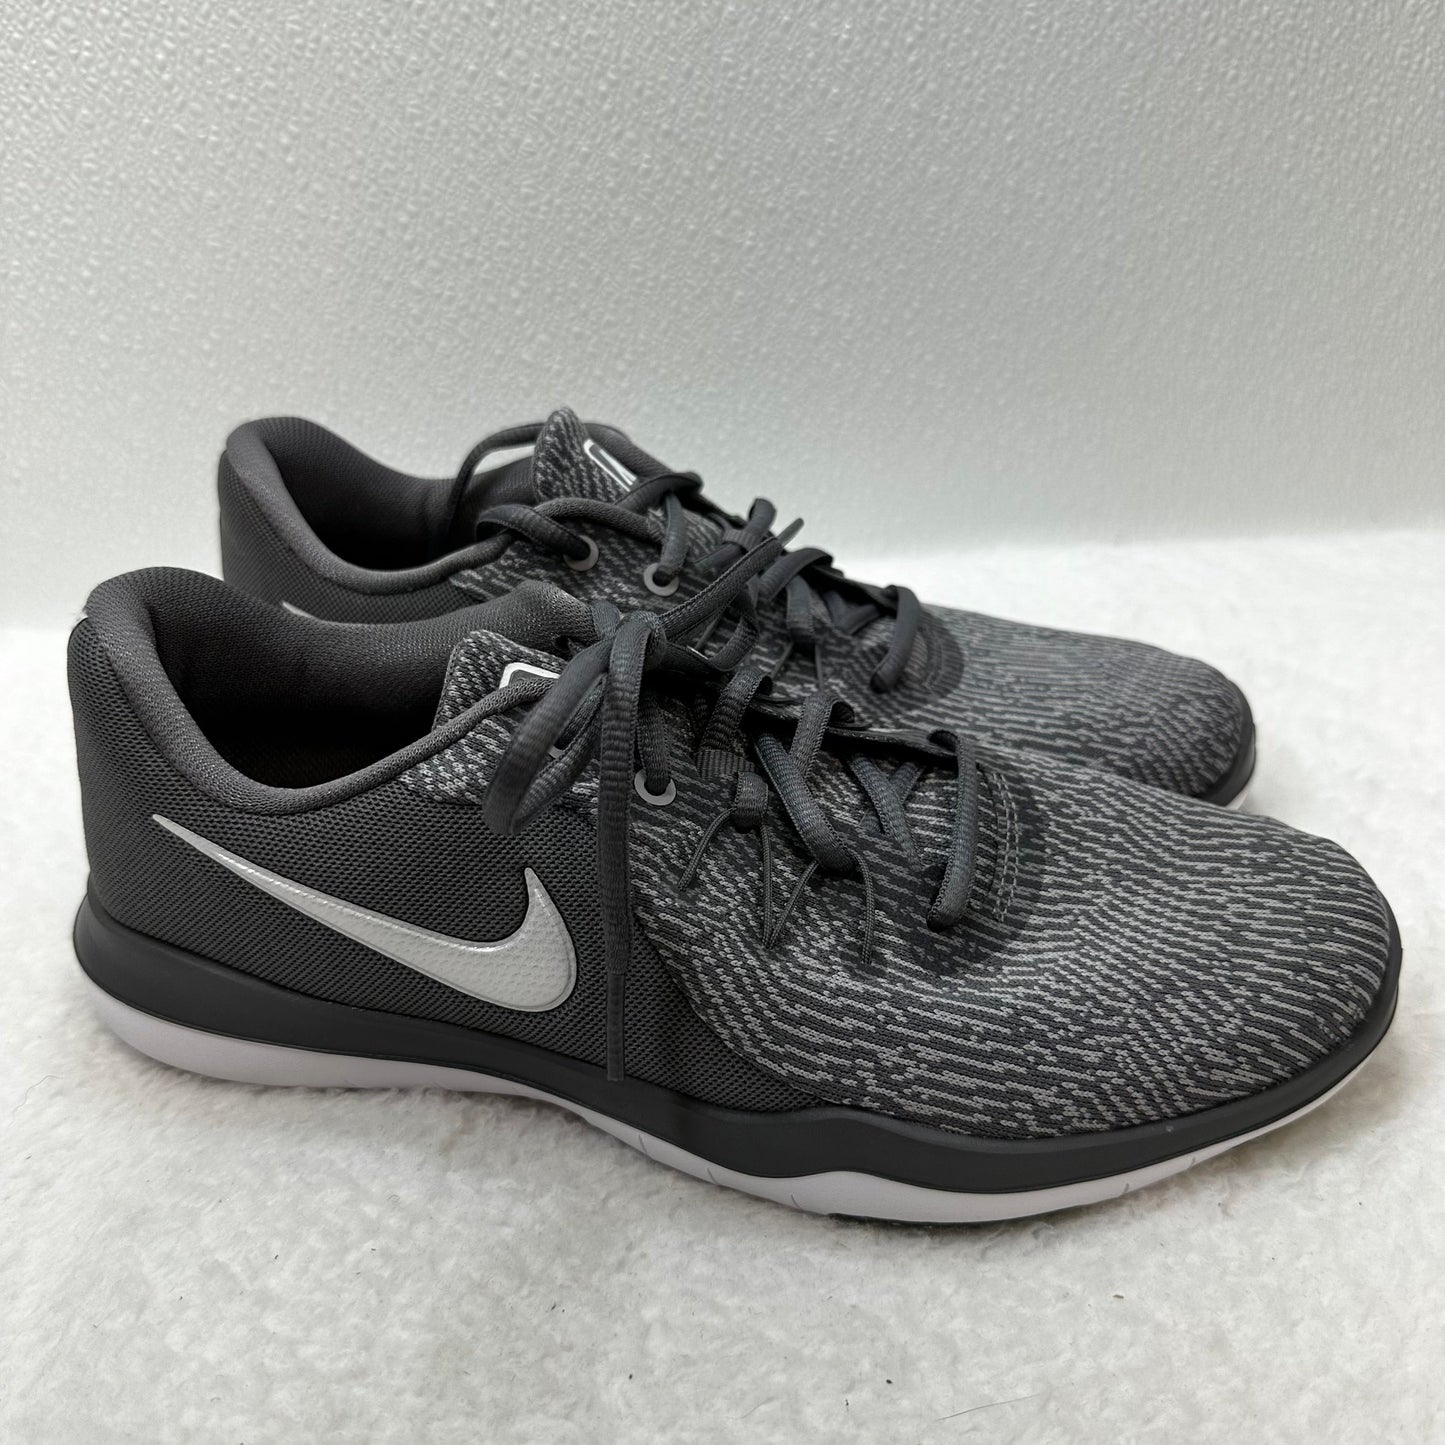 Grey Shoes Athletic Nike, Size 8.5